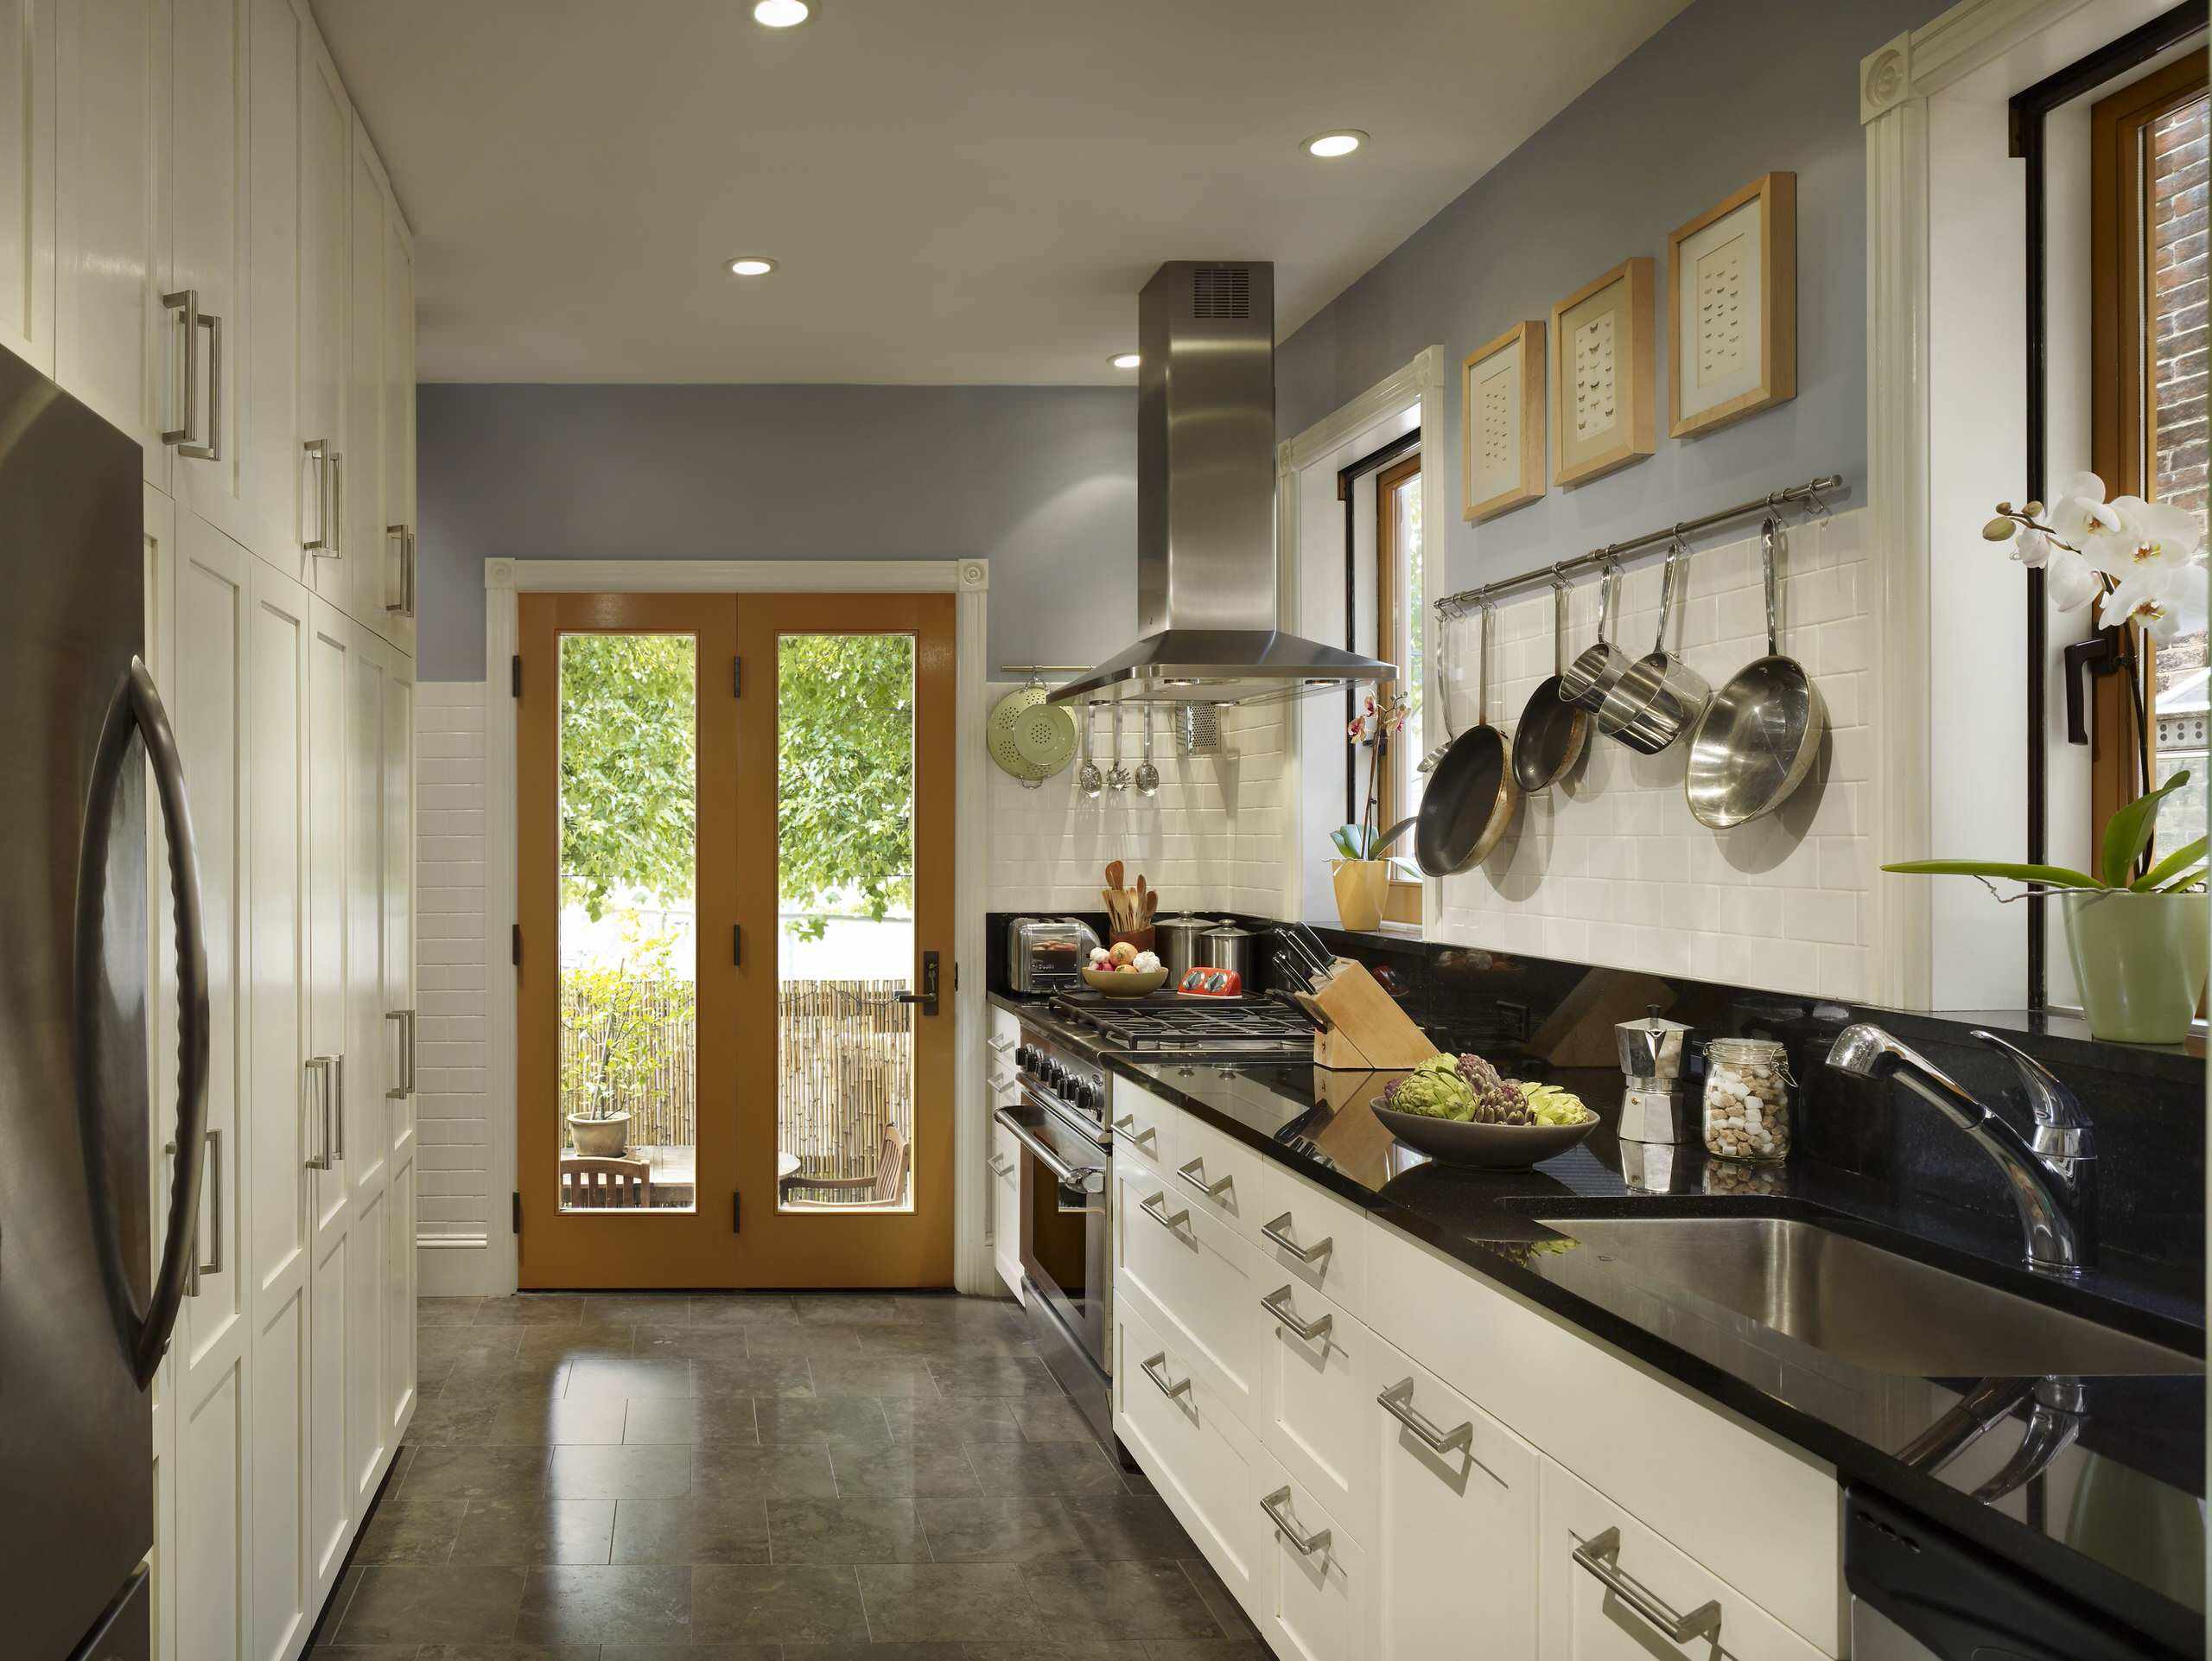 20 Narrow Kitchen Design ideas   Interior design ideas and photos